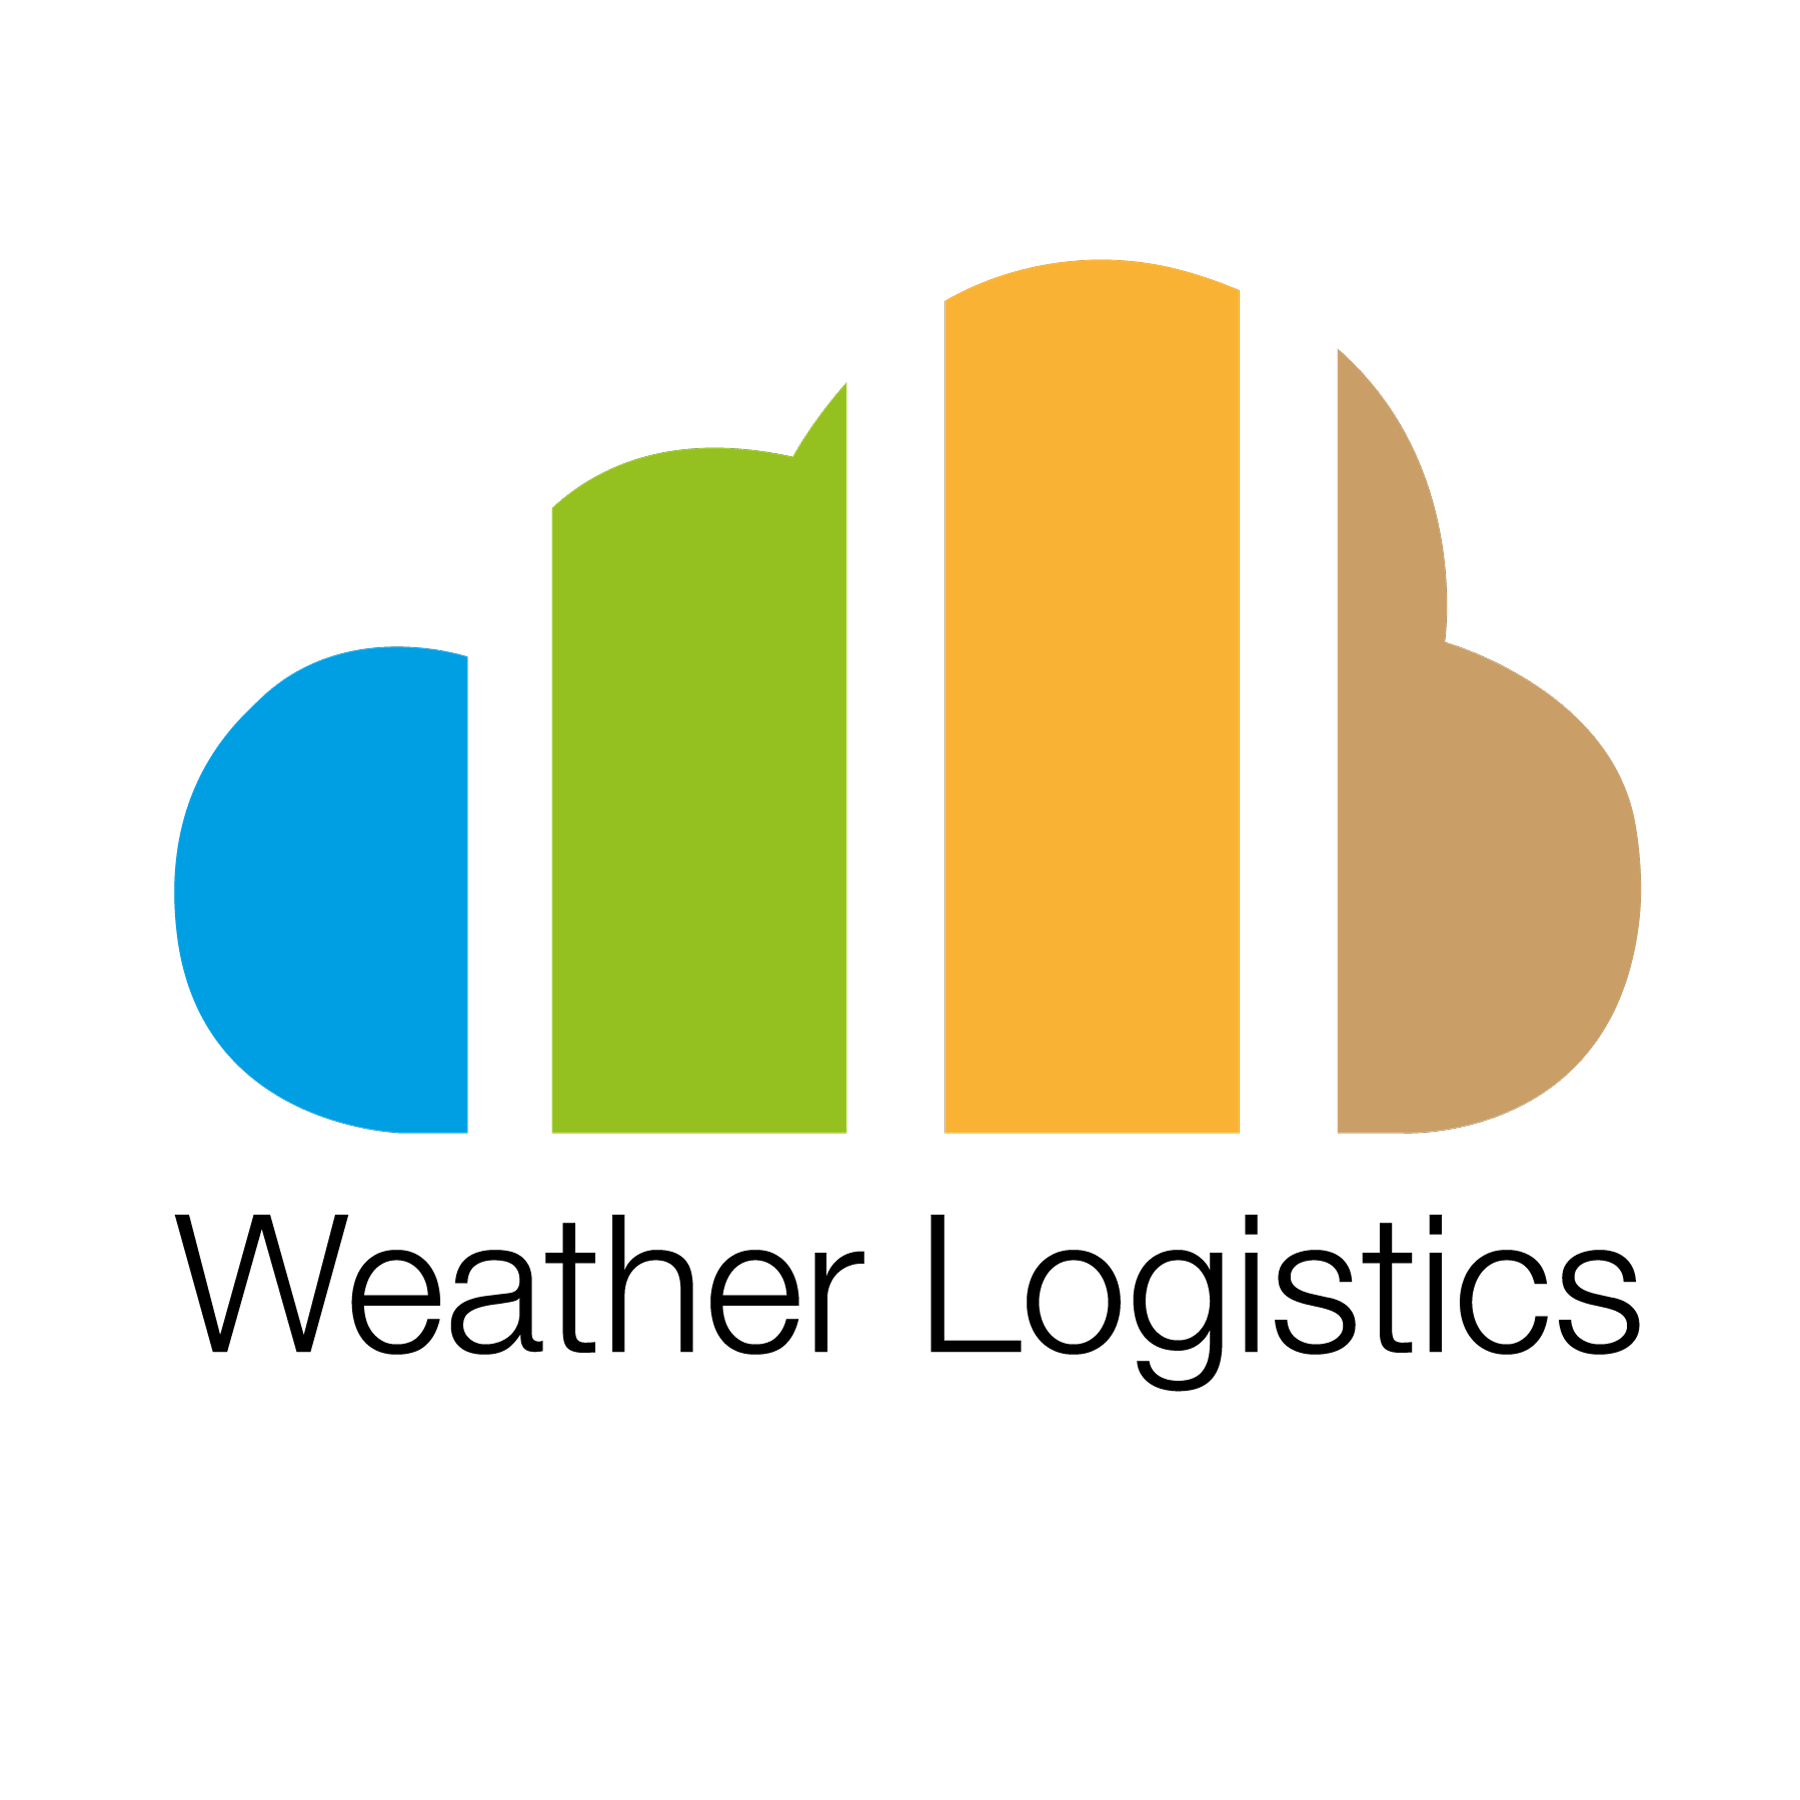 Weather Logo - Weather Logistics. Seasonal Climate Forecasts